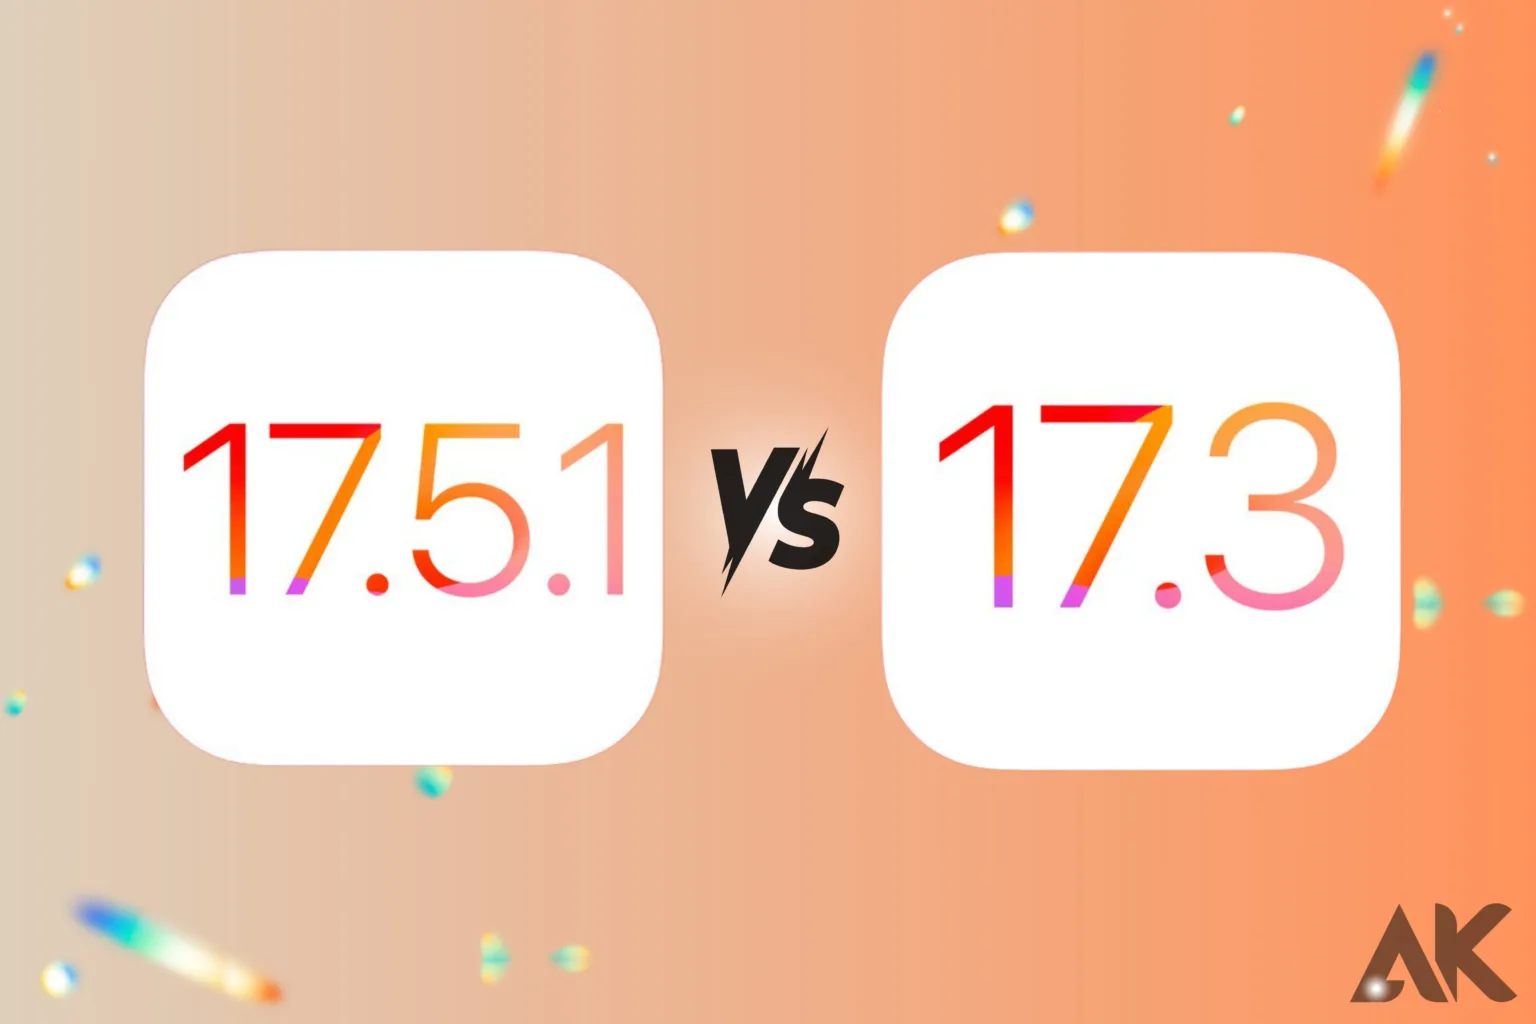 iOS 17.5.1 vs iOS 17.3